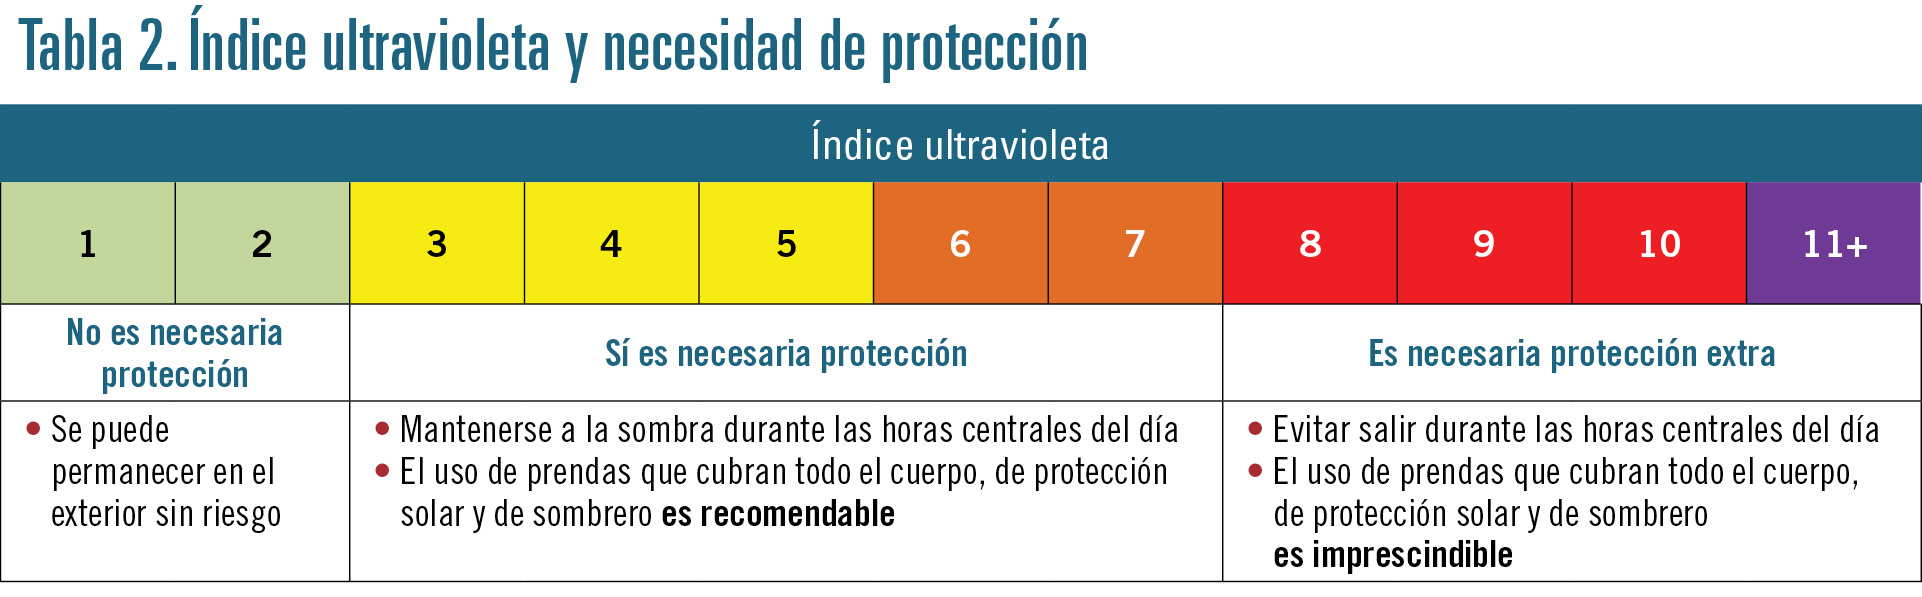 32 EF599 PROFESION fotoproteccion tabla 2